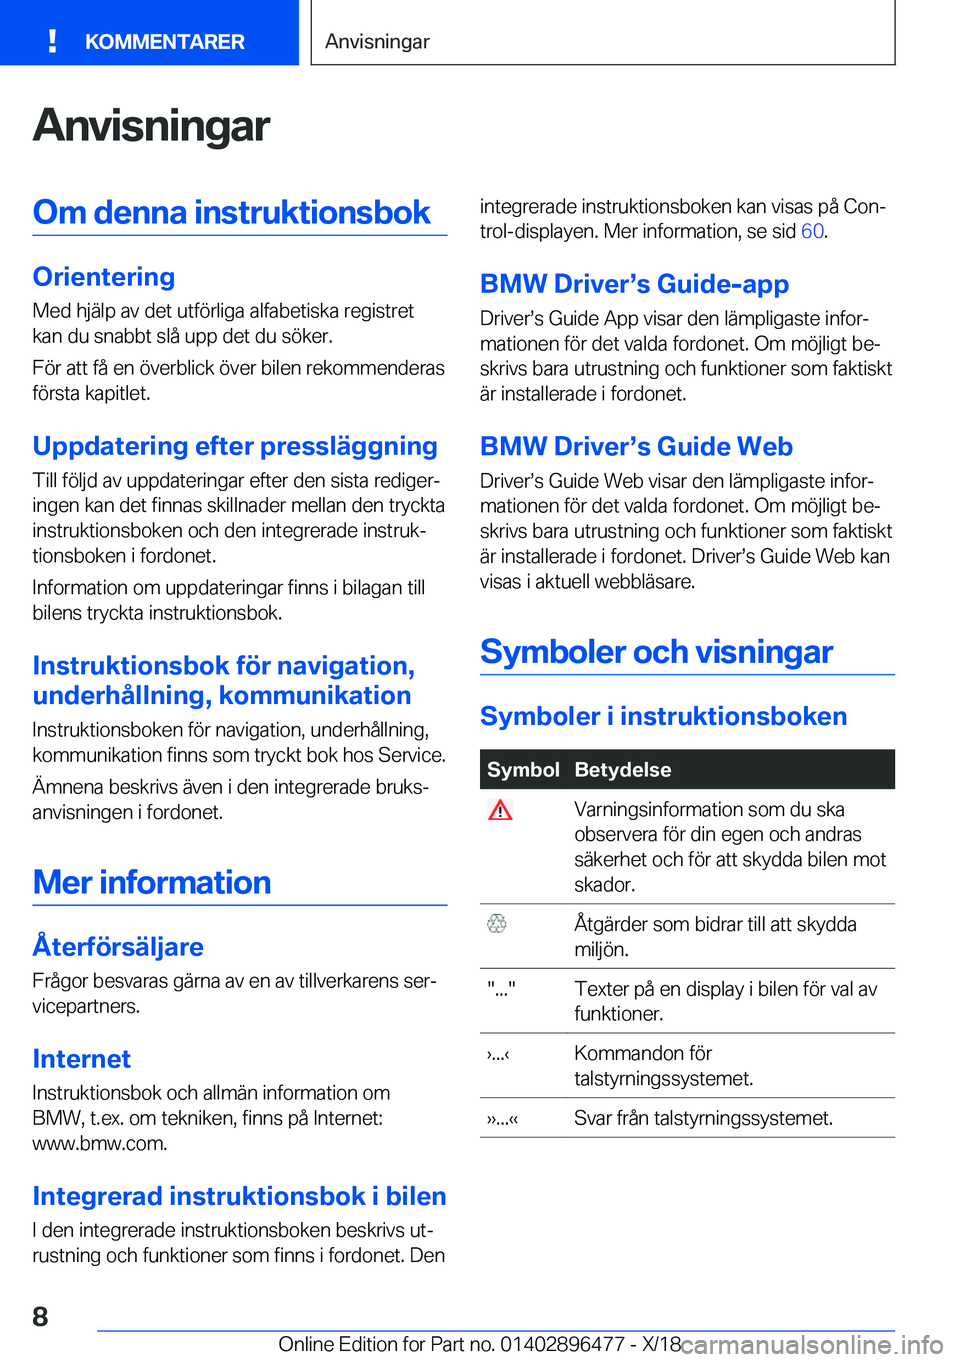 BMW X1 2019  InstruktionsbÖcker (in Swedish) �A�n�v�i�s�n�i�n�g�a�r�O�m��d�e�n�n�a��i�n�s�t�r�u�k�t�i�o�n�s�b�o�k
�O�r�i�e�n�t�e�r�i�n�g
�M�e�d��h�j�ä�l�p��a�v��d�e�t��u�t�f�